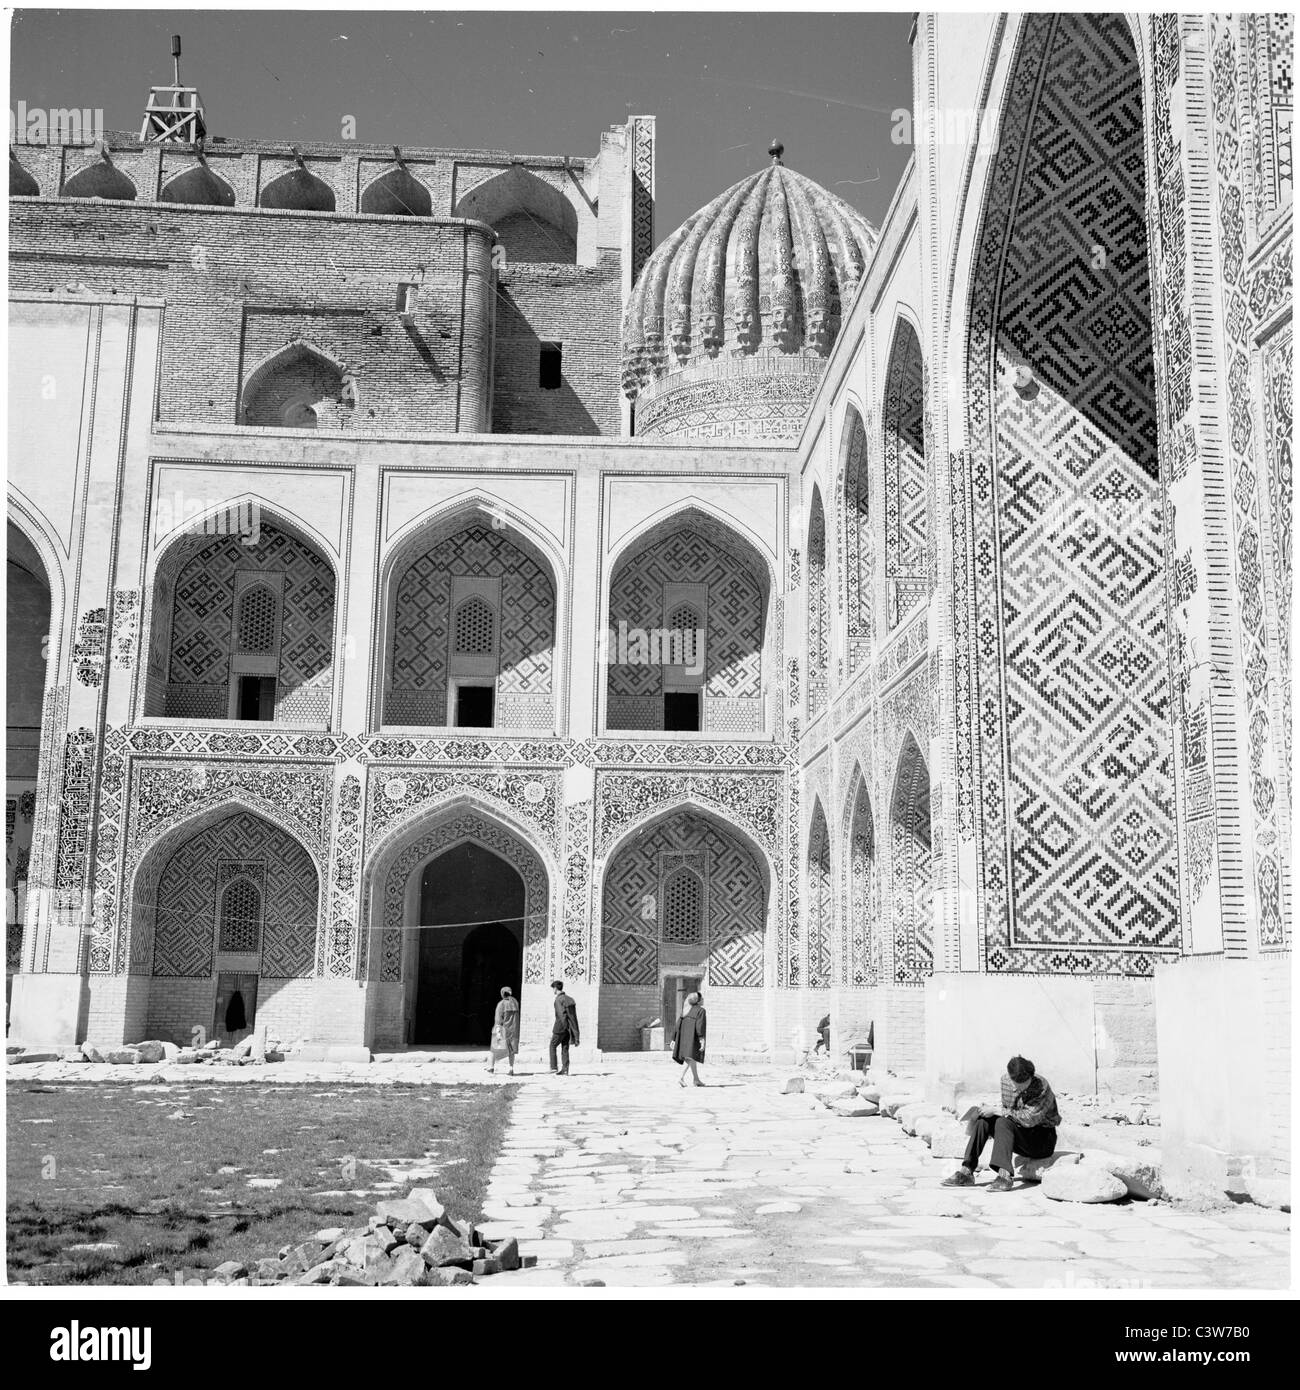 1950er Jahre historische Bild von J Allan Cash, sehen wir das Innere der Shir-Dar Madrassa, Registan-Platz, Smarkand, Usbekistan. Stockfoto